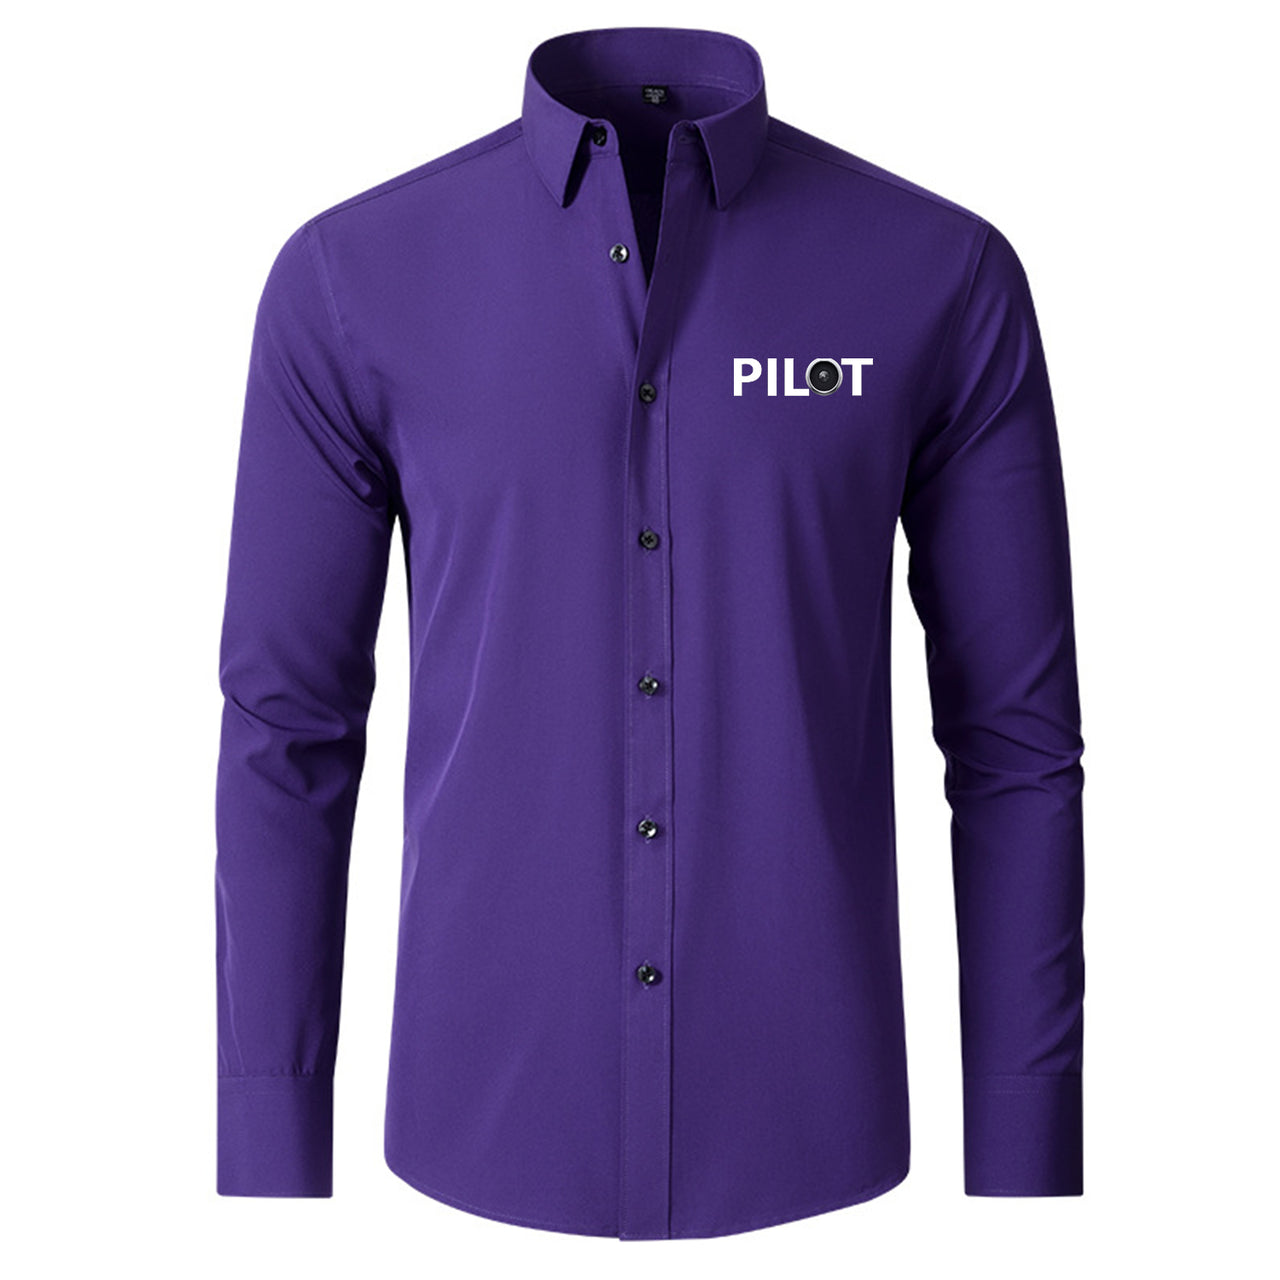 Pilot & Jet Engine Designed Long Sleeve Shirts